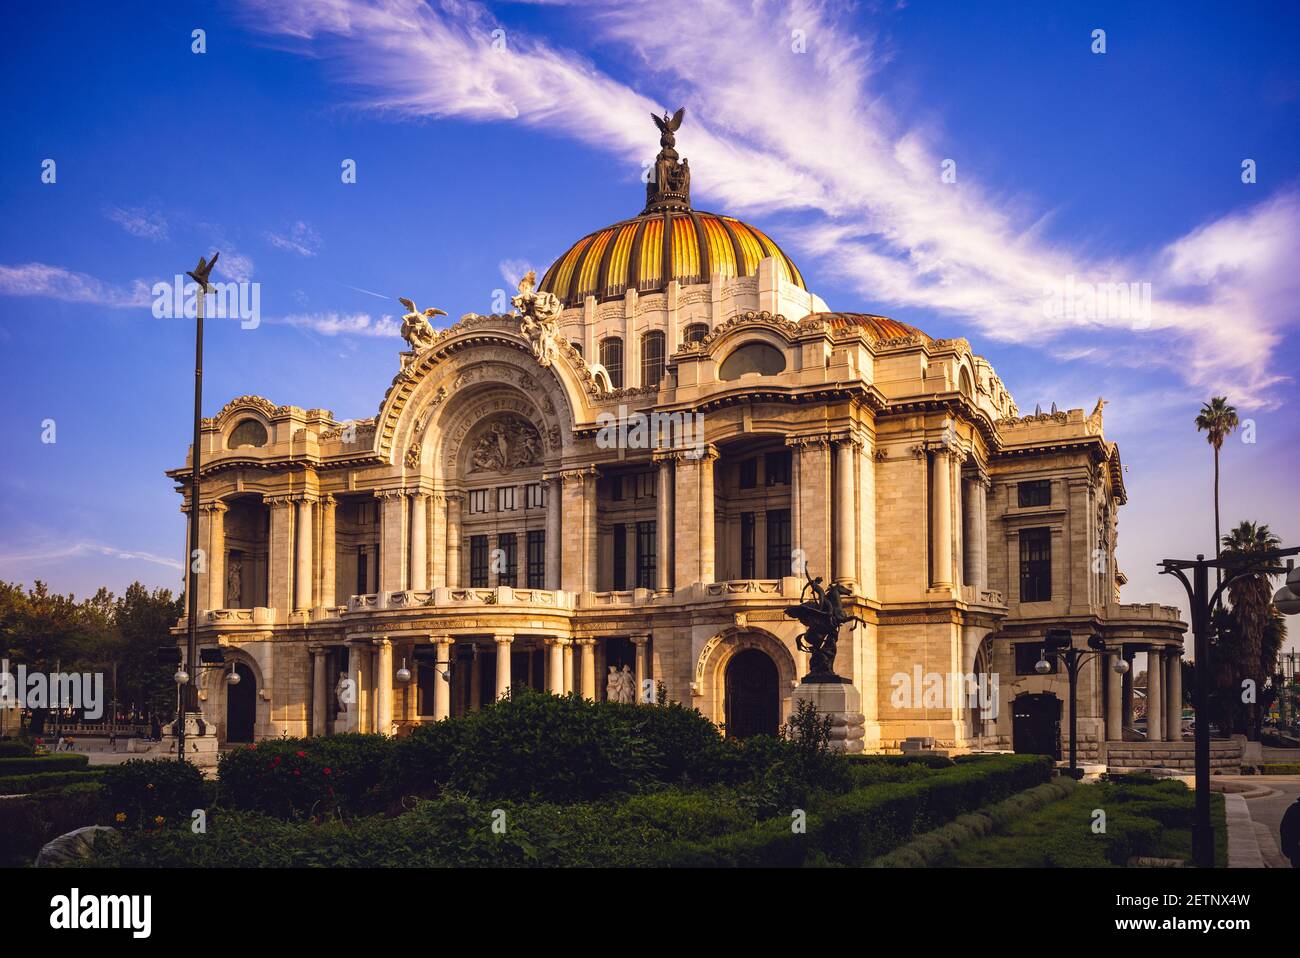 Palacio de Bellas Artes, Palast der Schönen Künste, Mexiko-Stadt. Übersetzung: 'Palast der Schönen Künste' Stockfoto